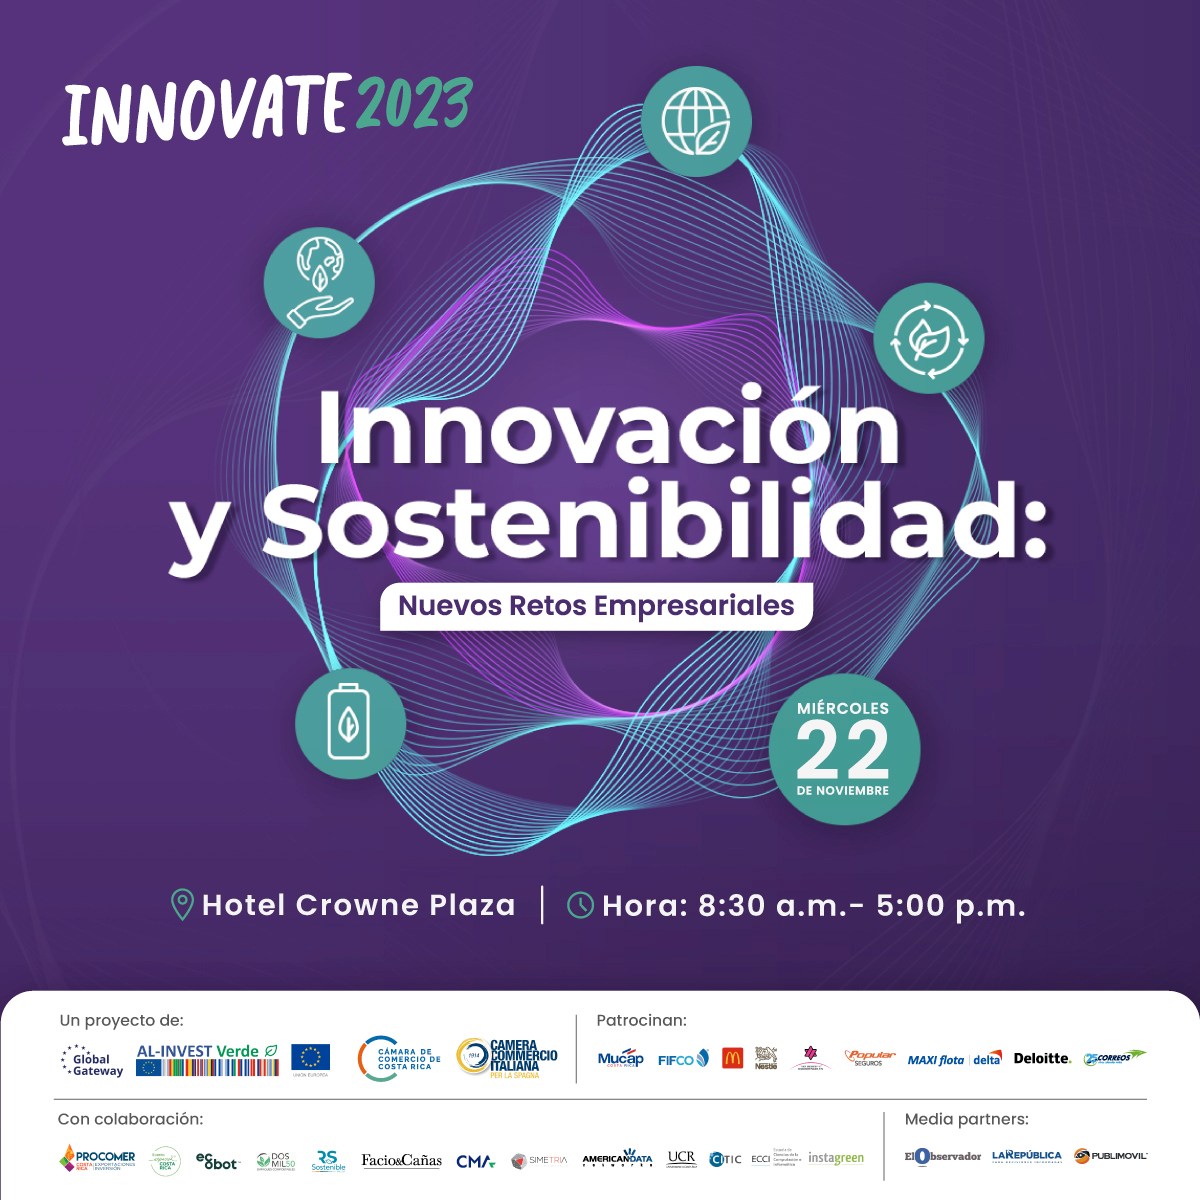 Incremente sus conocimientos en sostenibilidad participando en nuestro congreso #Innovate2023 el próximo 22 de noviembre. Postúlese aquí: bit.ly/3SnsSUI